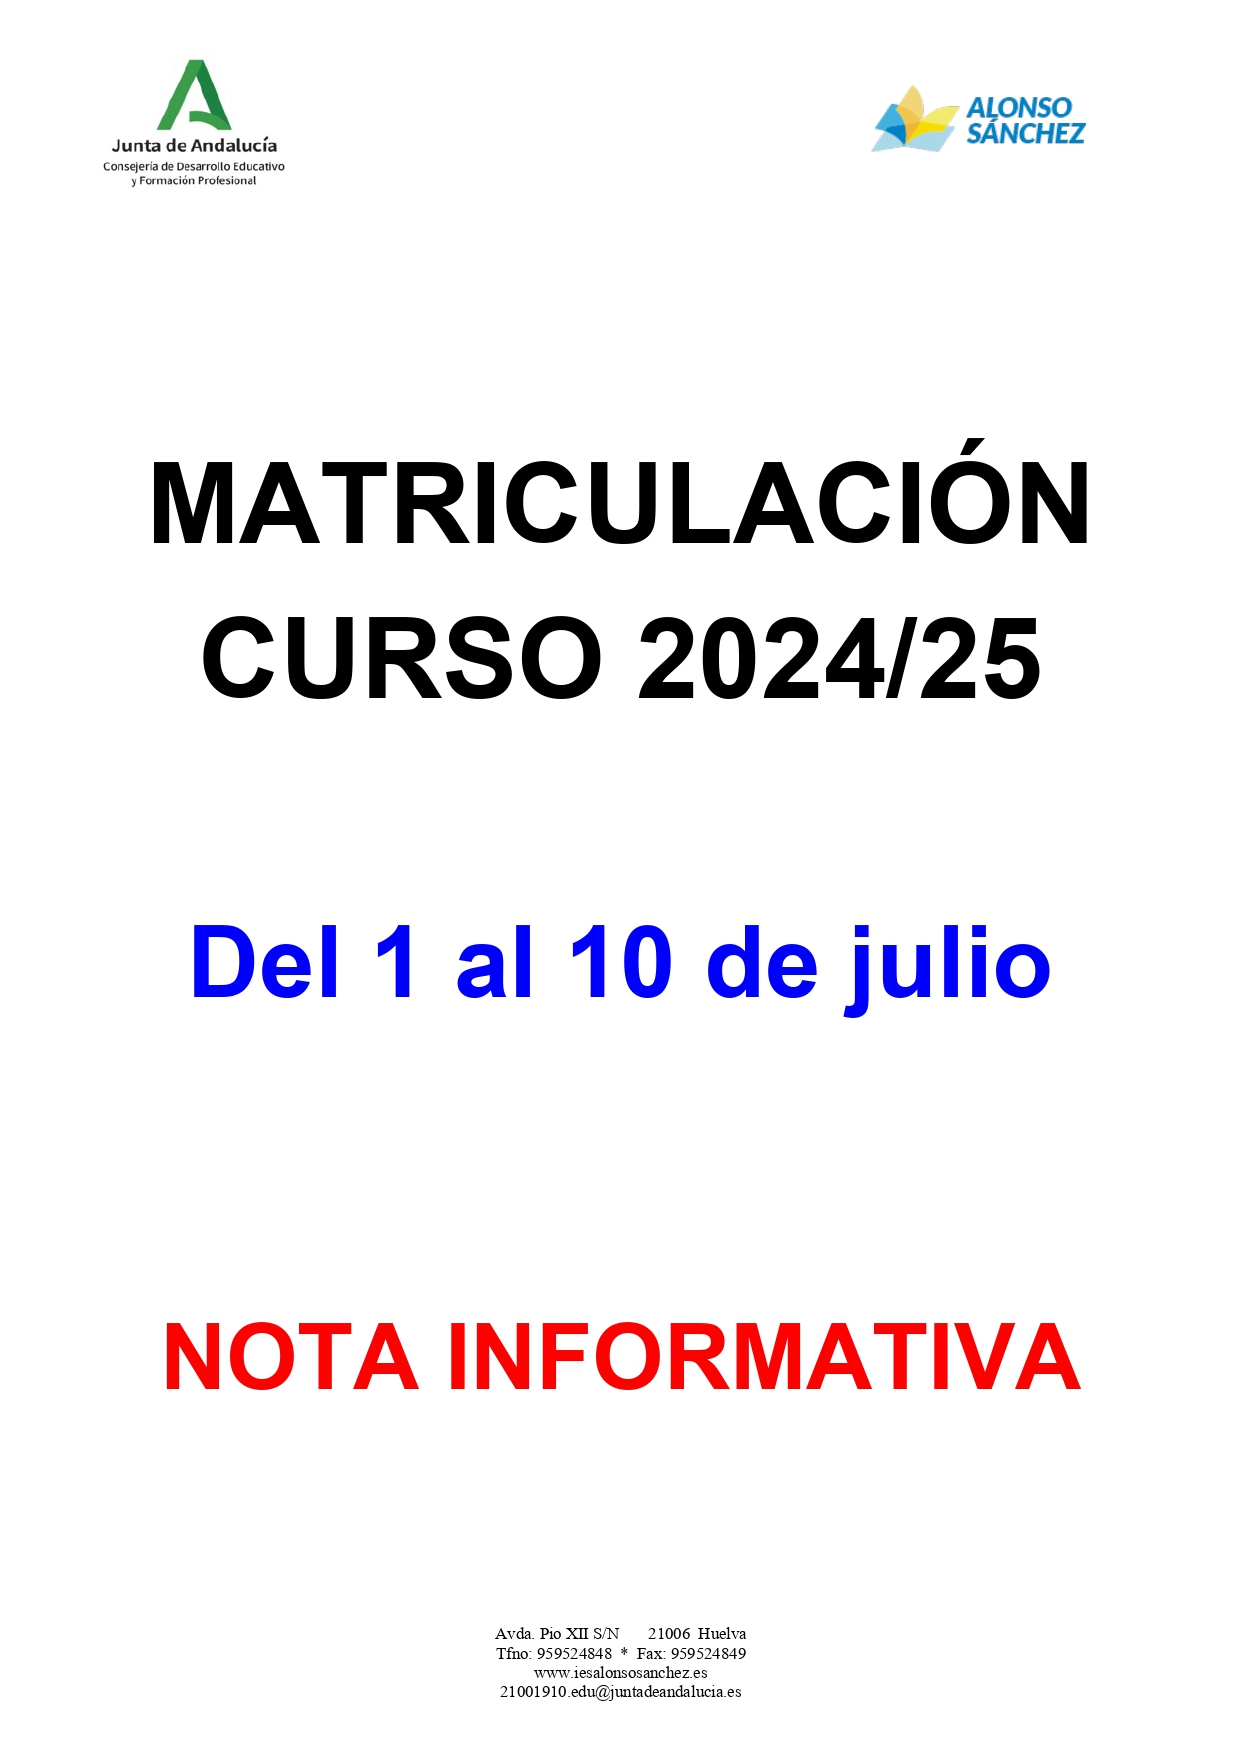 Matriculacion curso 2024/25